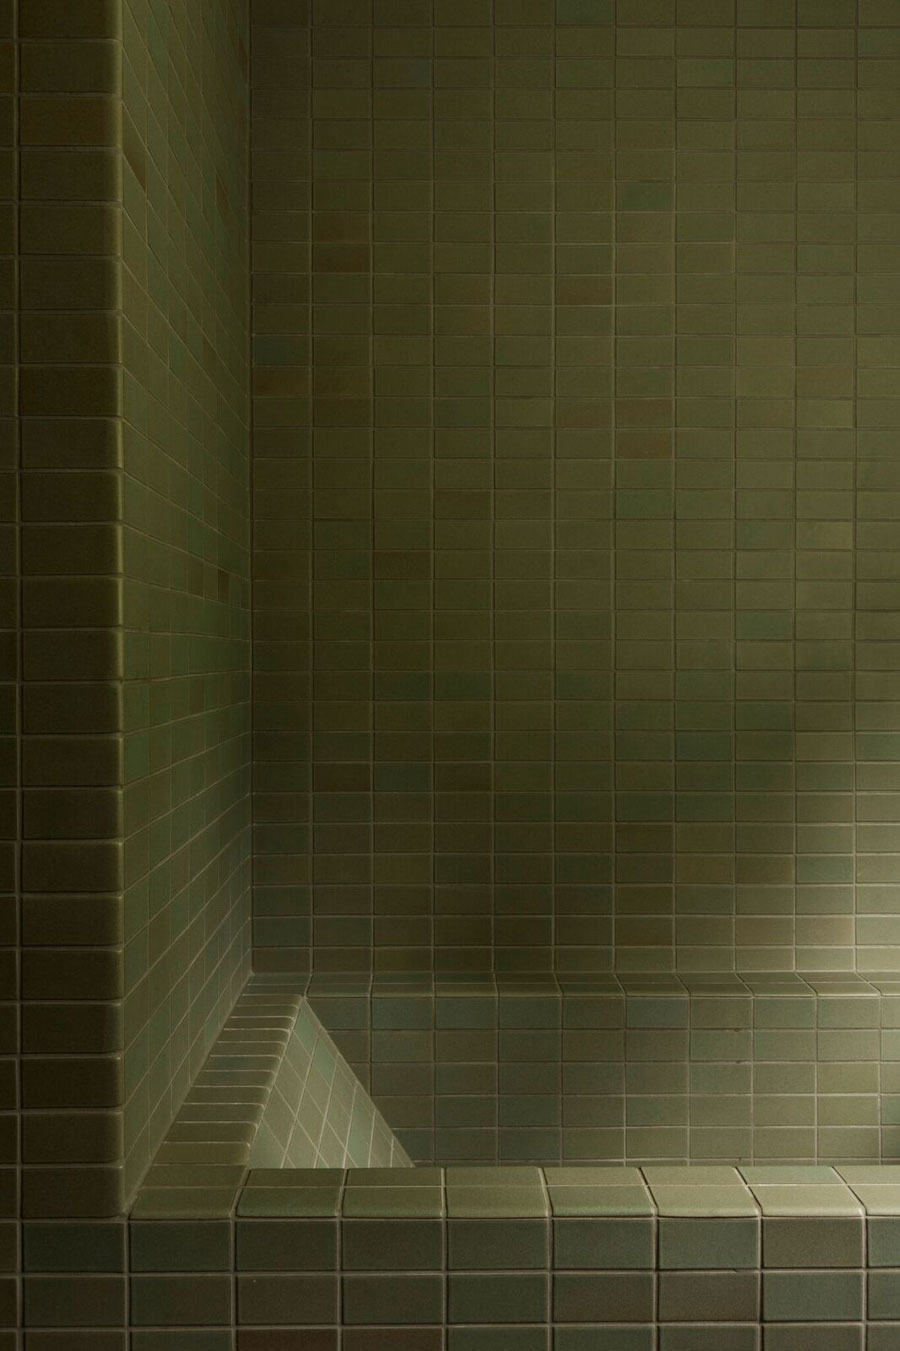 Twee jaren '50 vintage stijl badkamers met mosgroene tegels